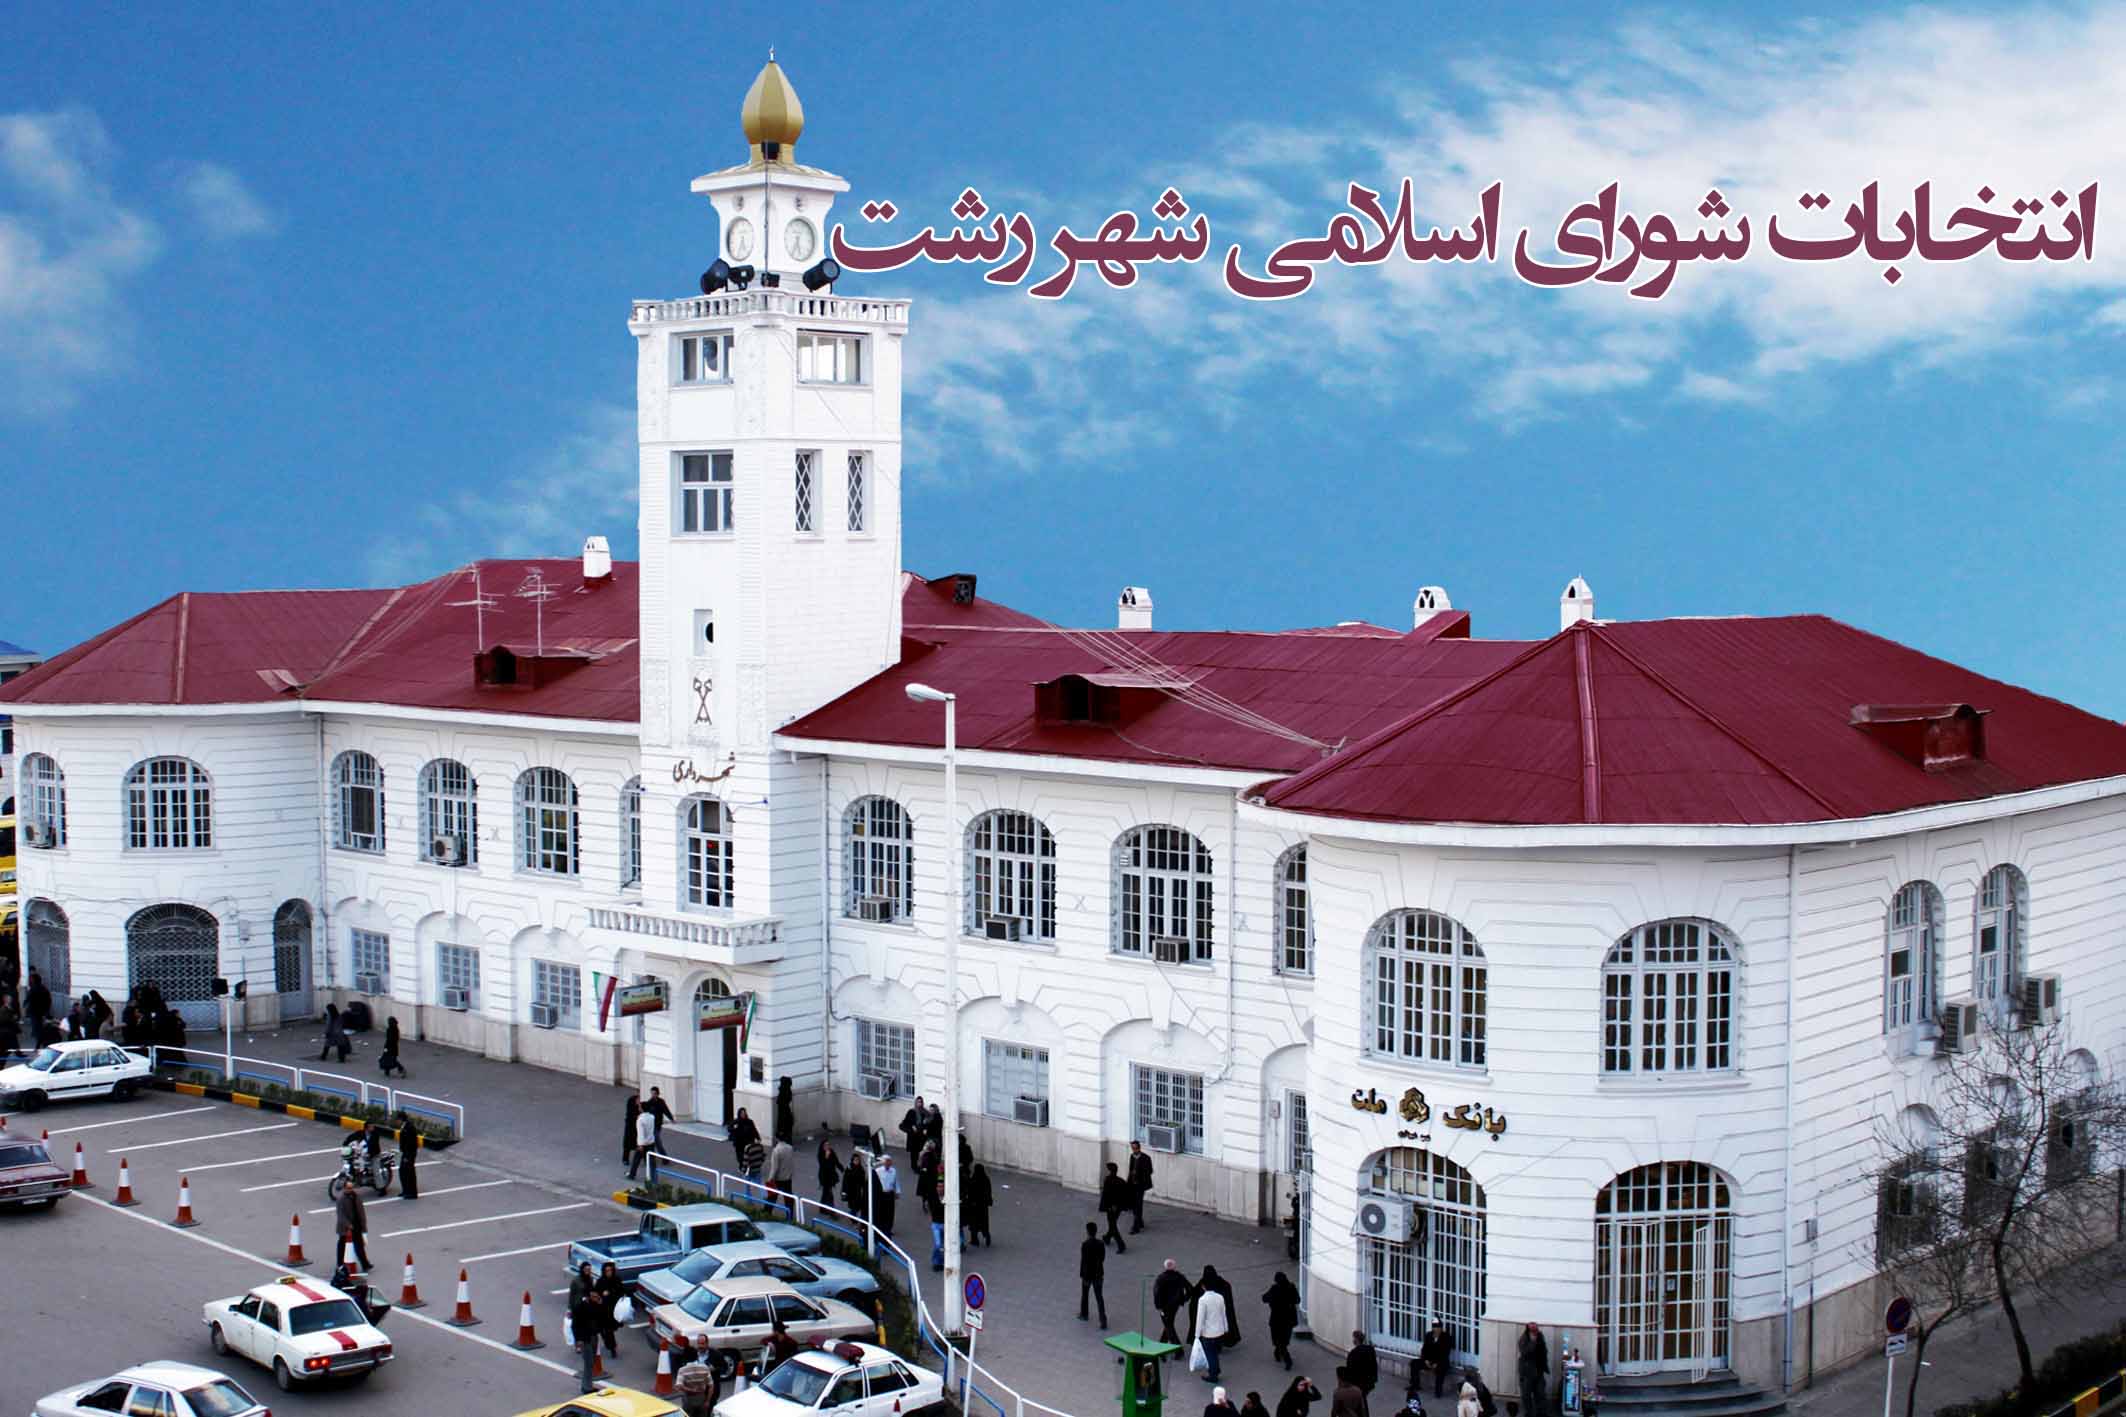 نامزدهای ردصلاحیت شده در انتخابات شورای اسلامی شهر رشت+ اسامی